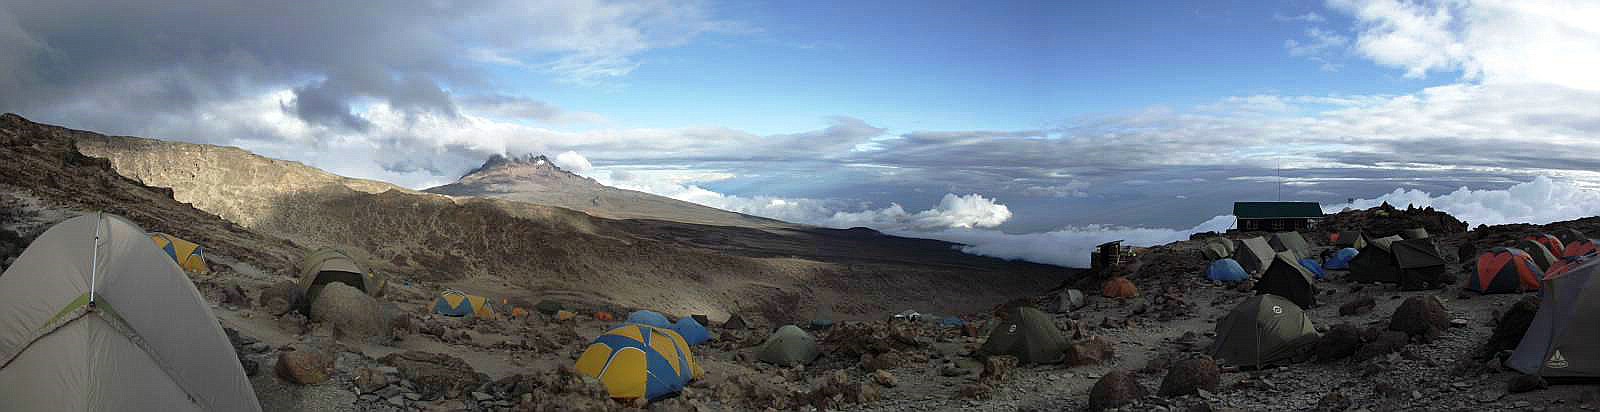 Im Barafu Camp (4.617 m.a.S.L.) mit Blick nach Osten zum Mawenzi - Januar 2013 - © Dieter G. Weiss